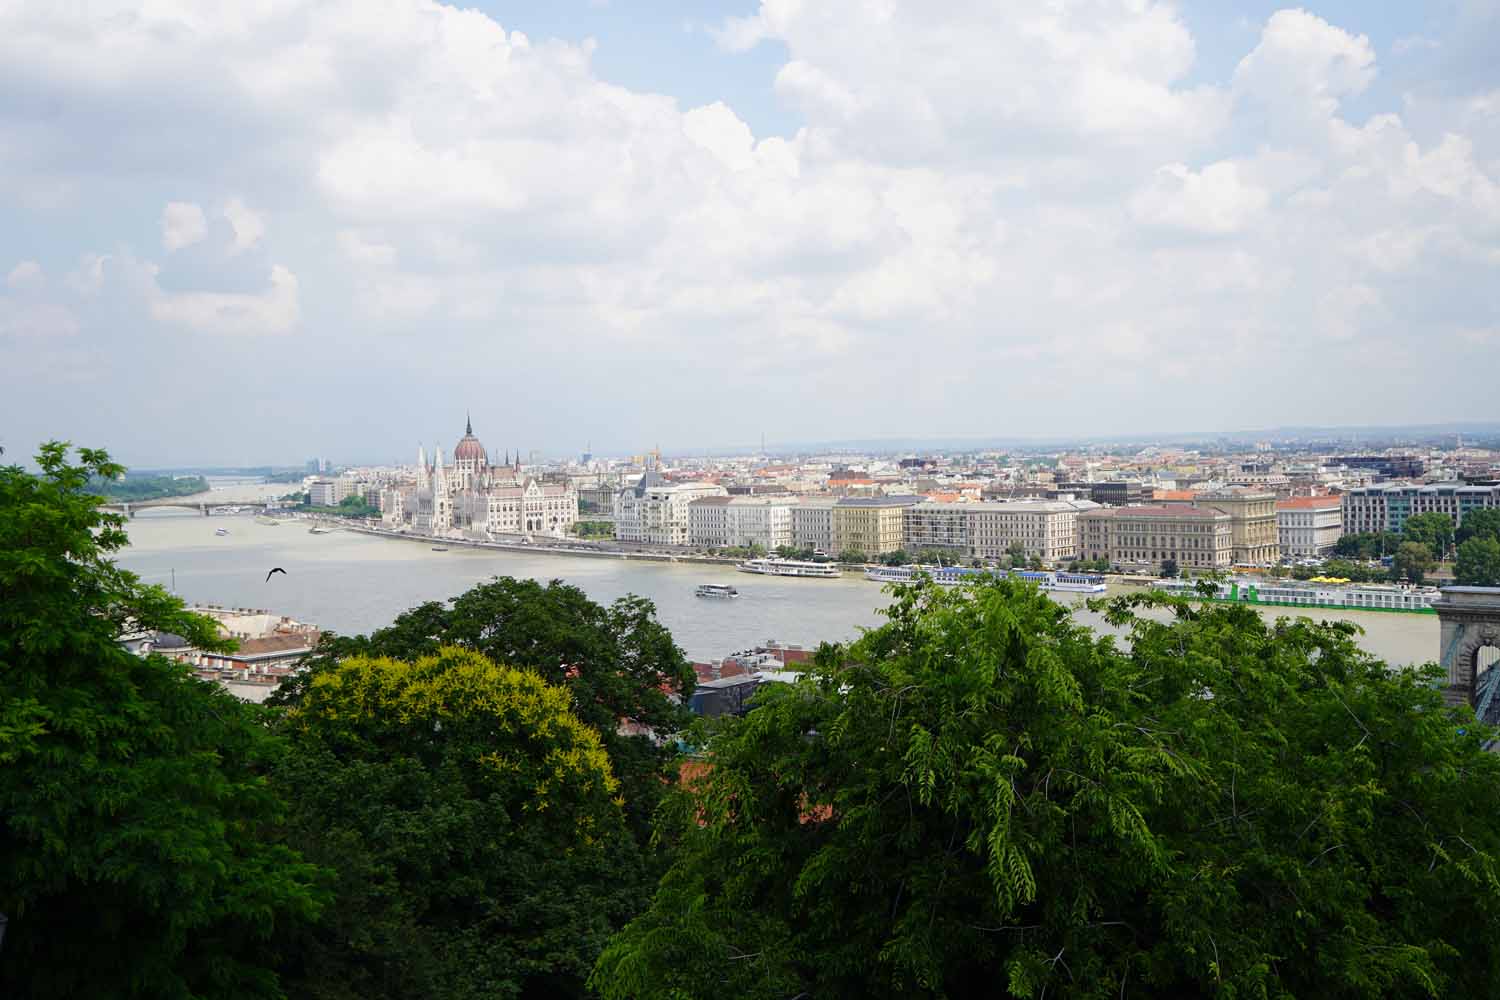 Budapest Sehenswürdigkeiten: 9 Dinge die du nicht verpassen solltest (+ Tipps für cooles Sightseeing mit Teenager)